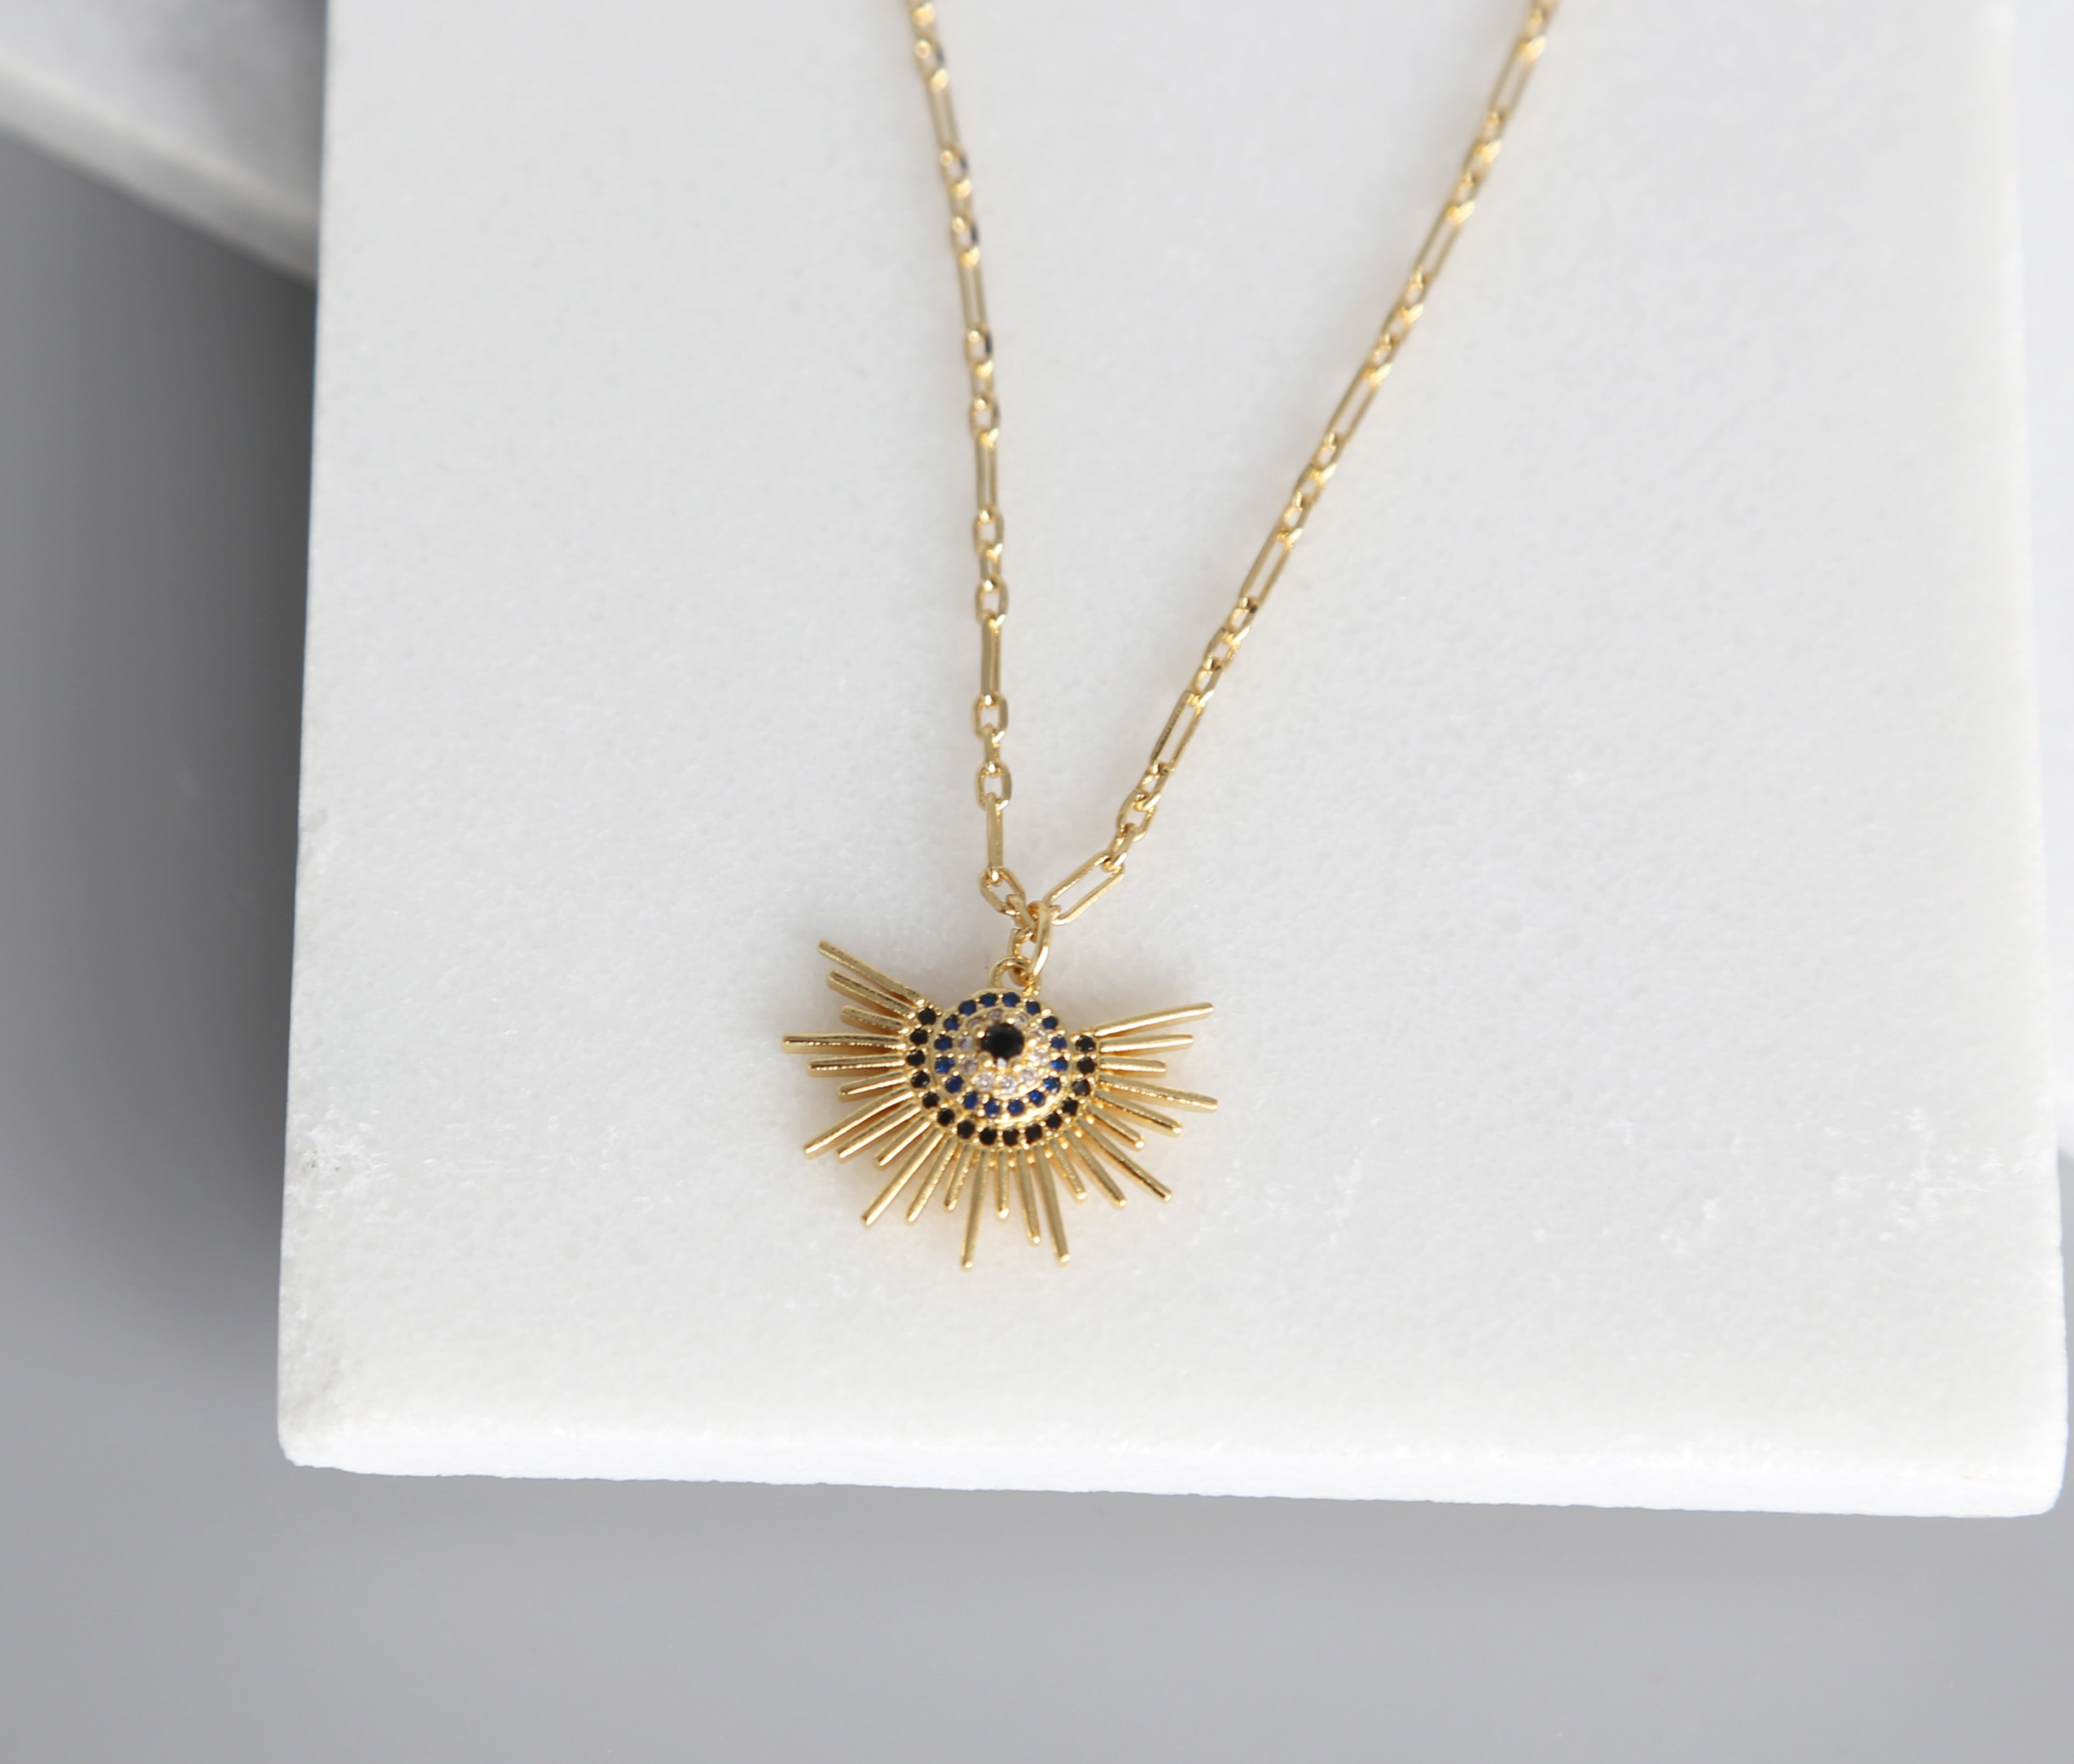 Sunrise Necklace, Gold Necklace, Sunburst, Gold Chain, Luminous Collection